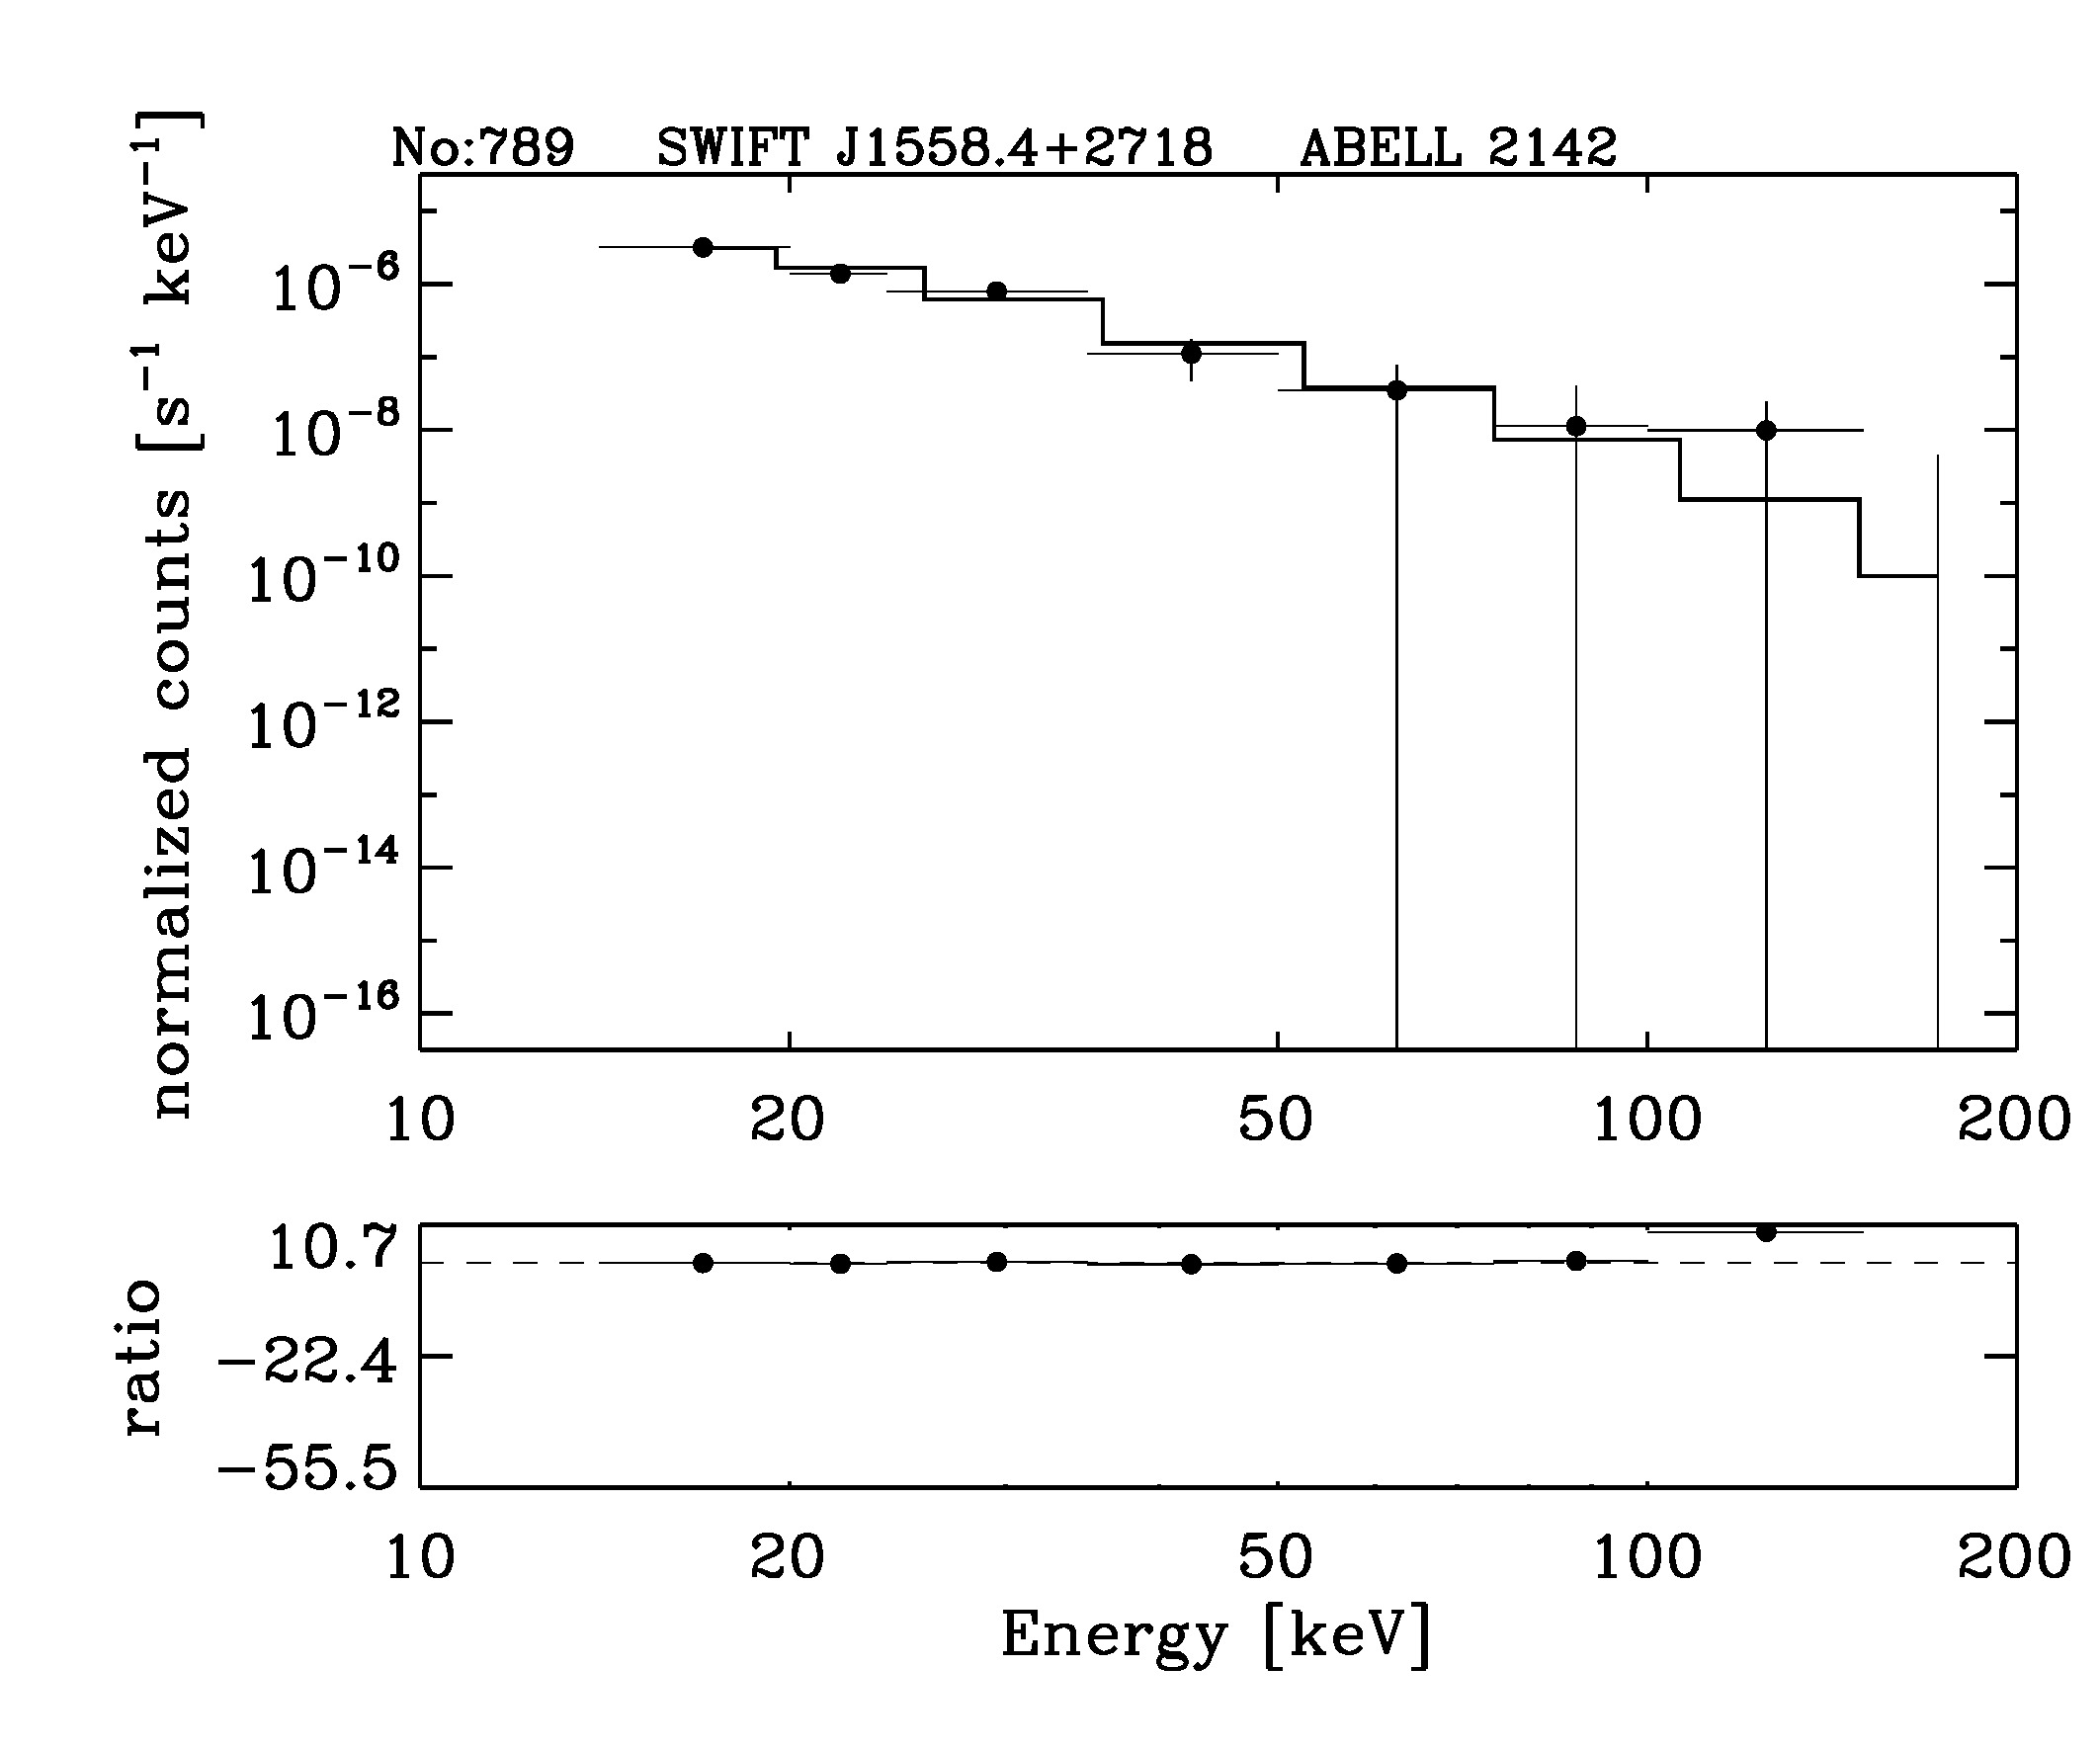 BAT Spectrum for SWIFT J1558.4+2718